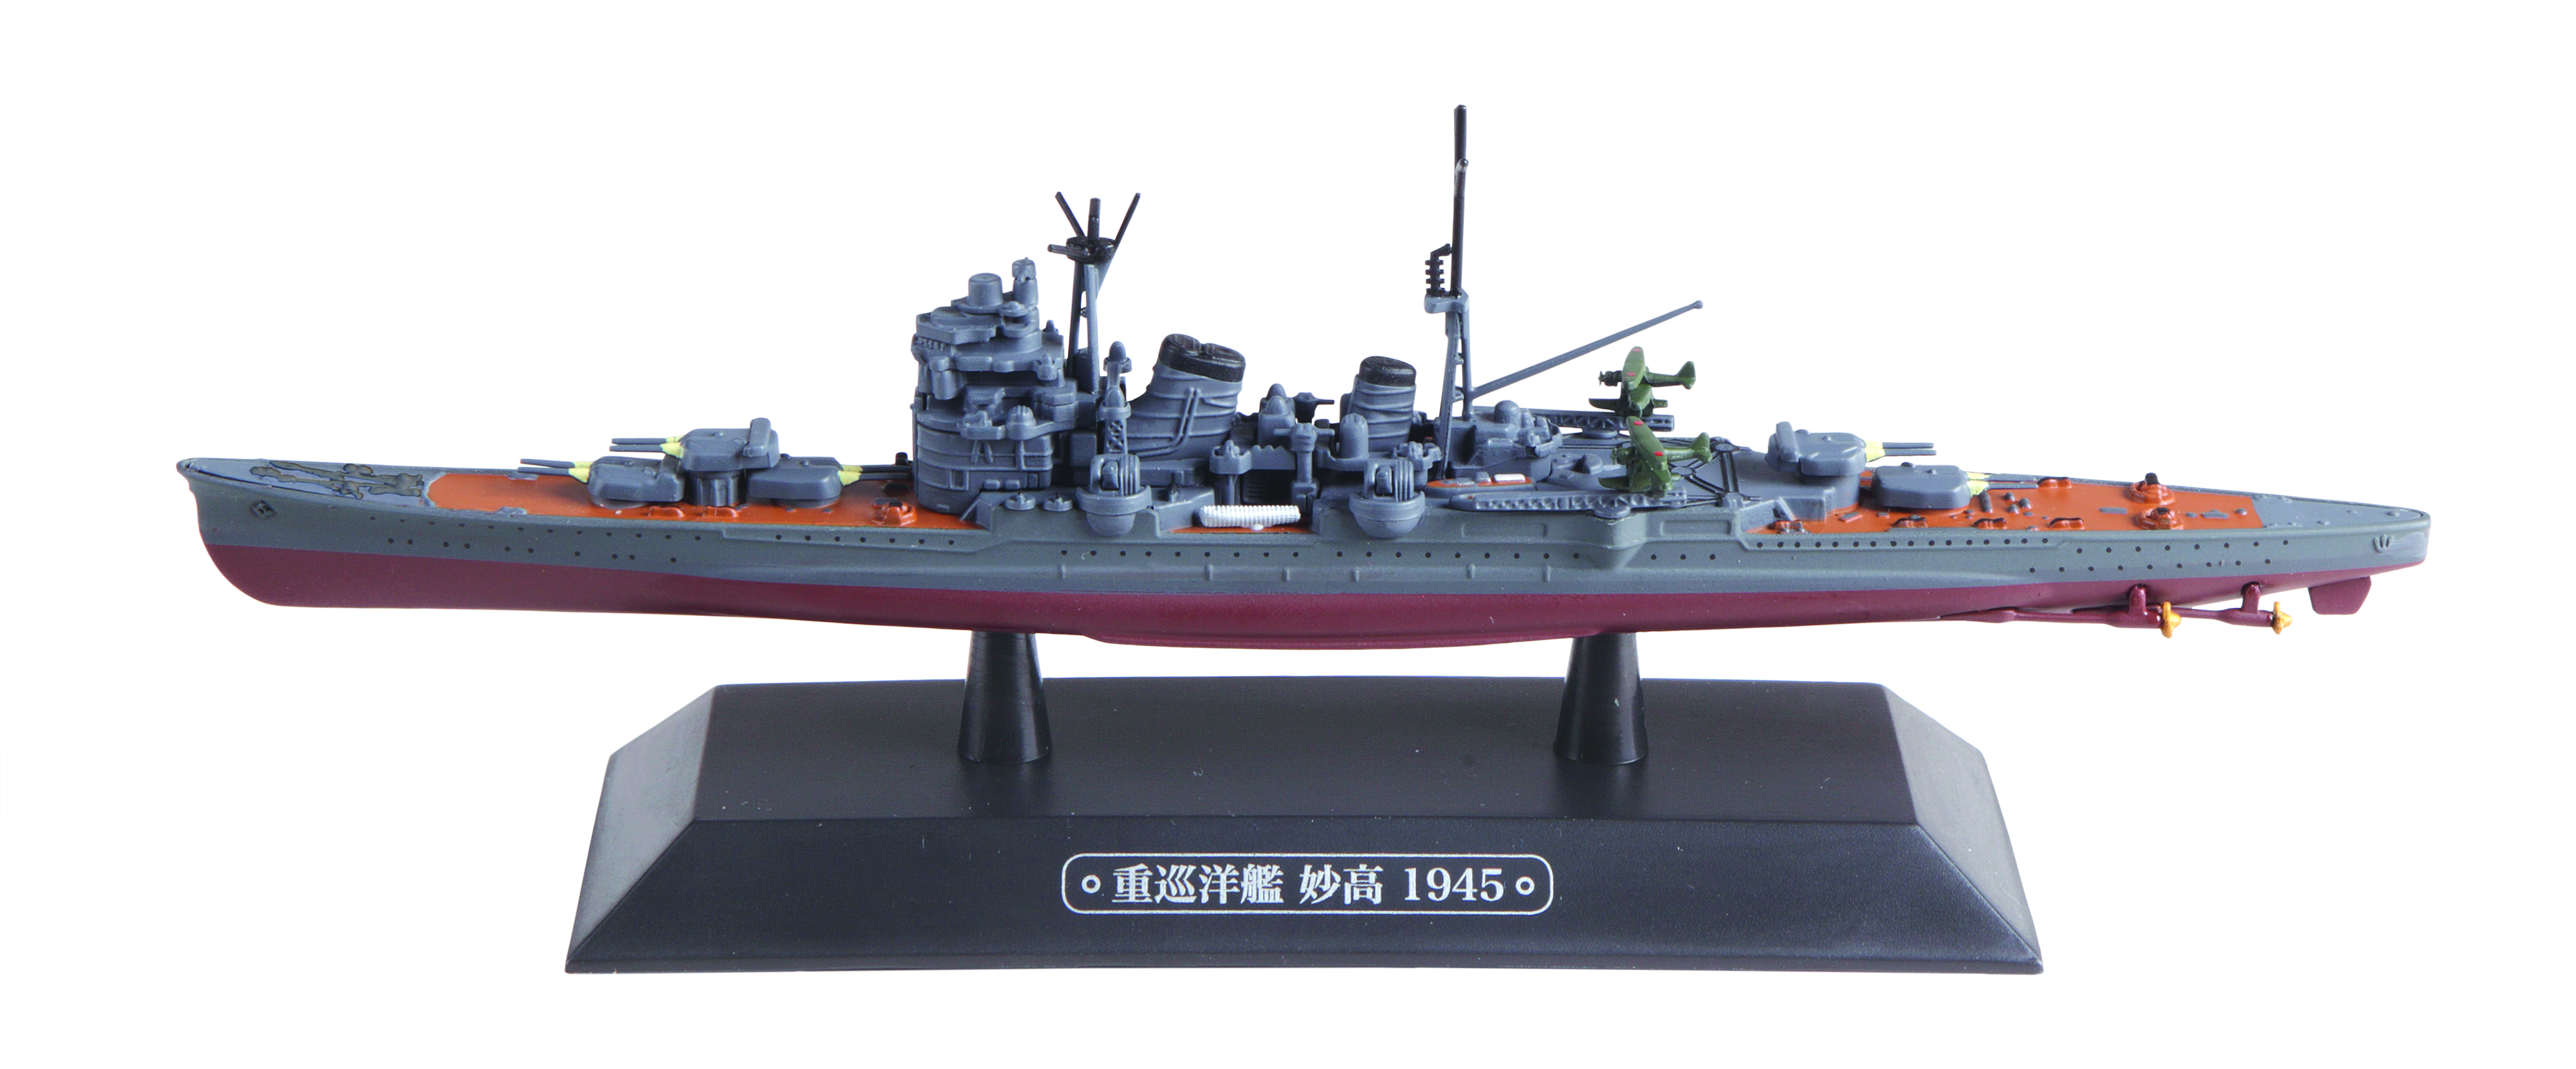 EMGC17 IJN Heavy Cruiser Myoko 1944 1:1100 Scale